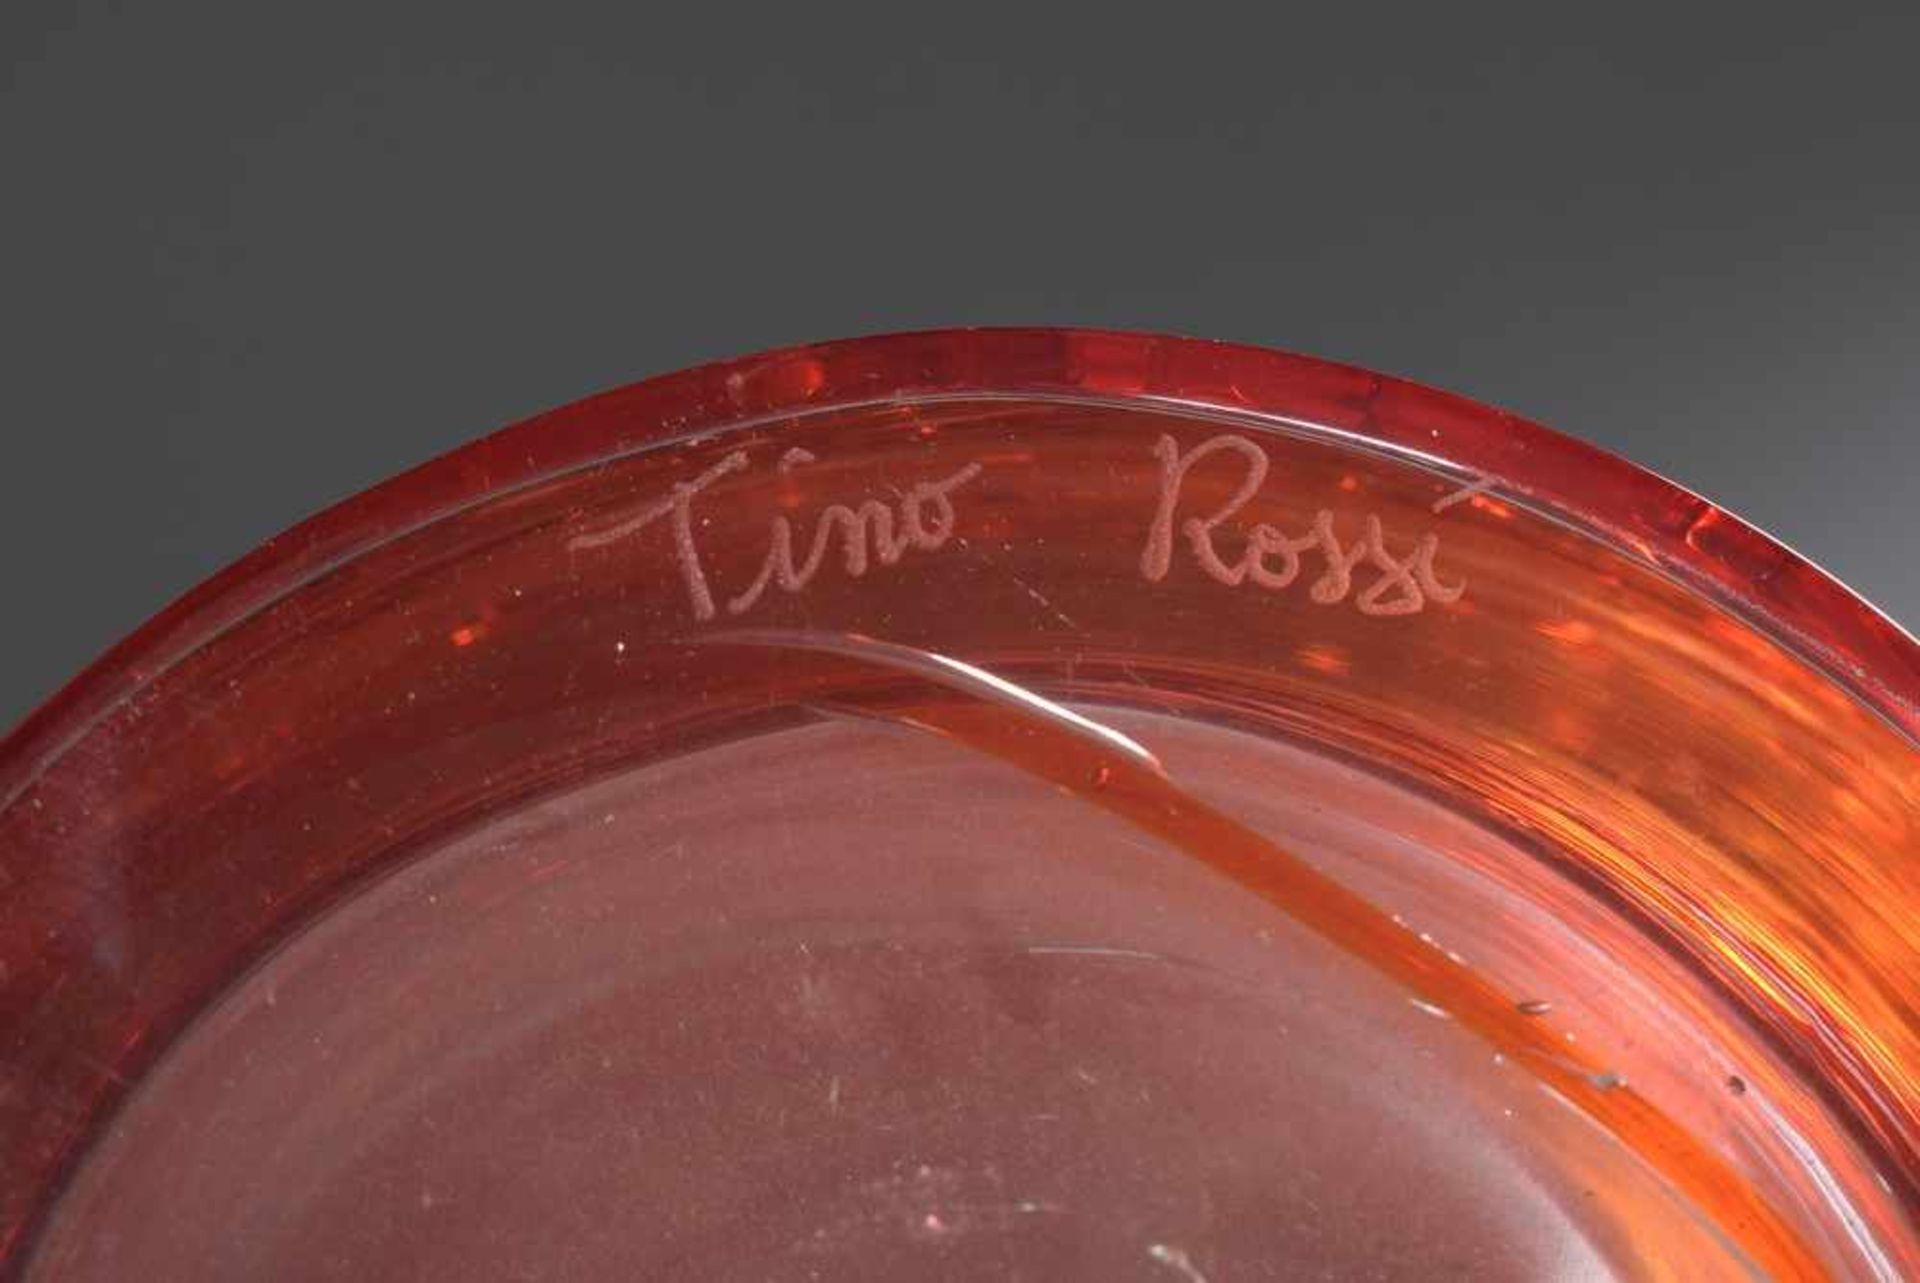 Hohe Murano Vase, farbloses Glas mit rotem Fadenaufschmelzungen, verso sign. "Tino Rossi" sowie dat. - Bild 2 aus 3